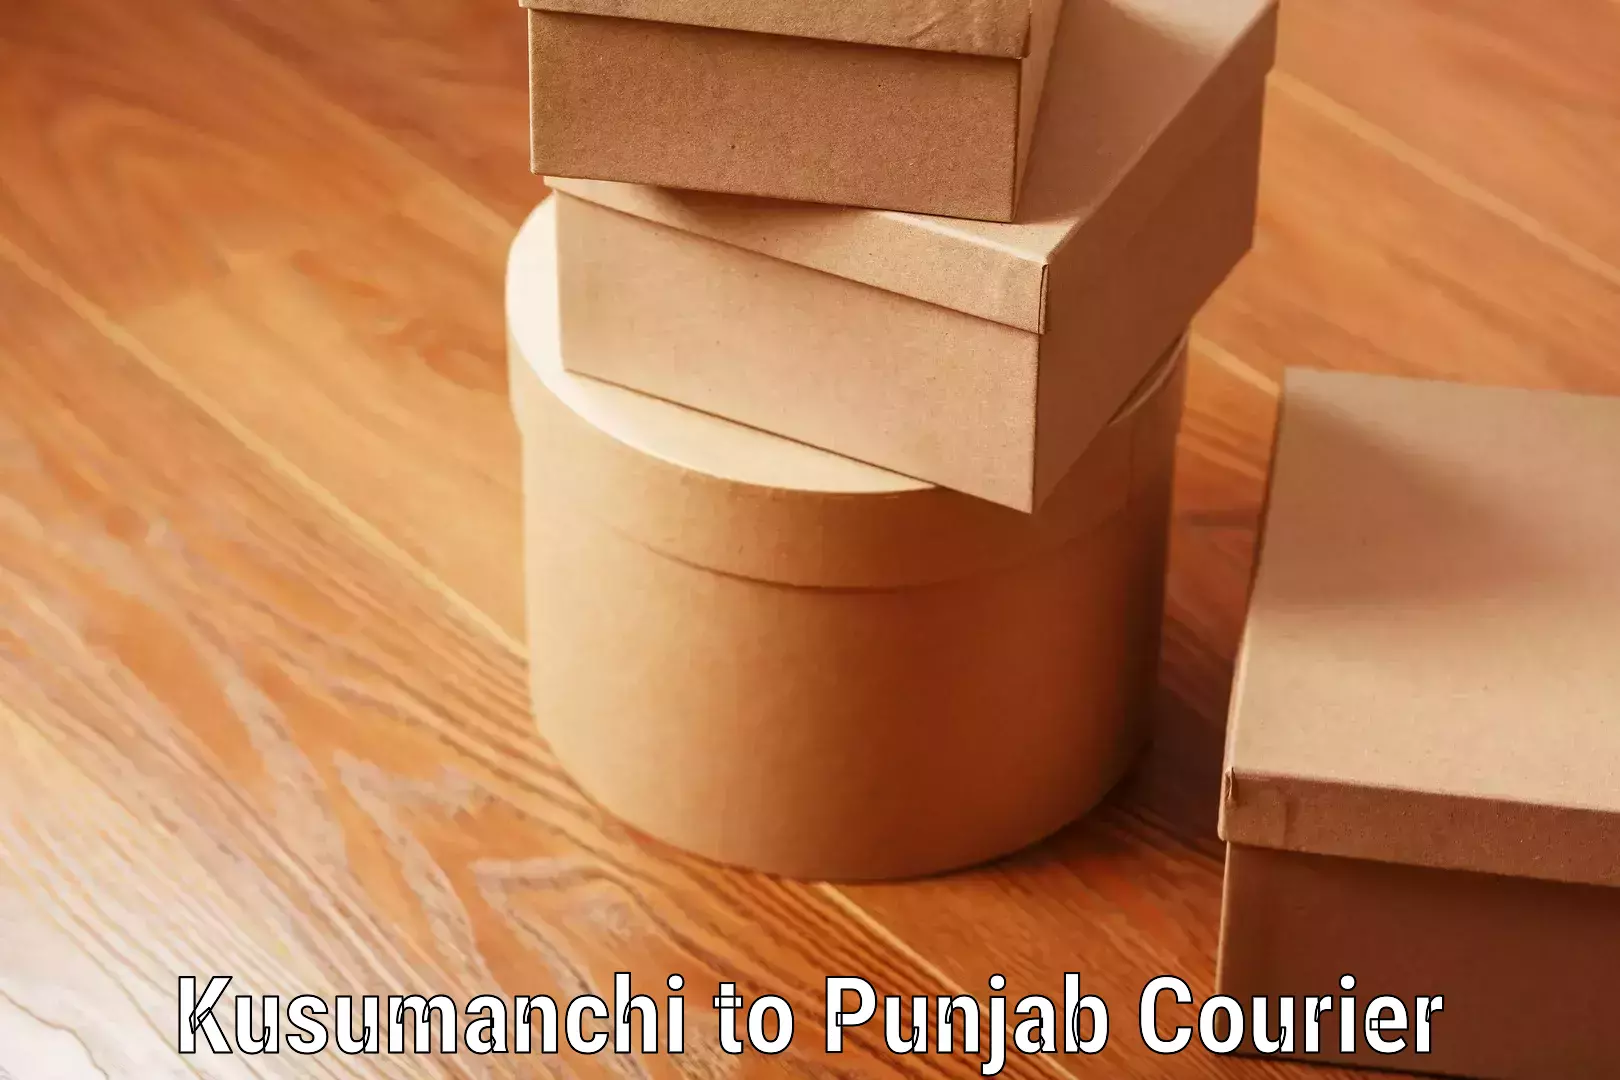 Luggage transport guidelines Kusumanchi to Punjab